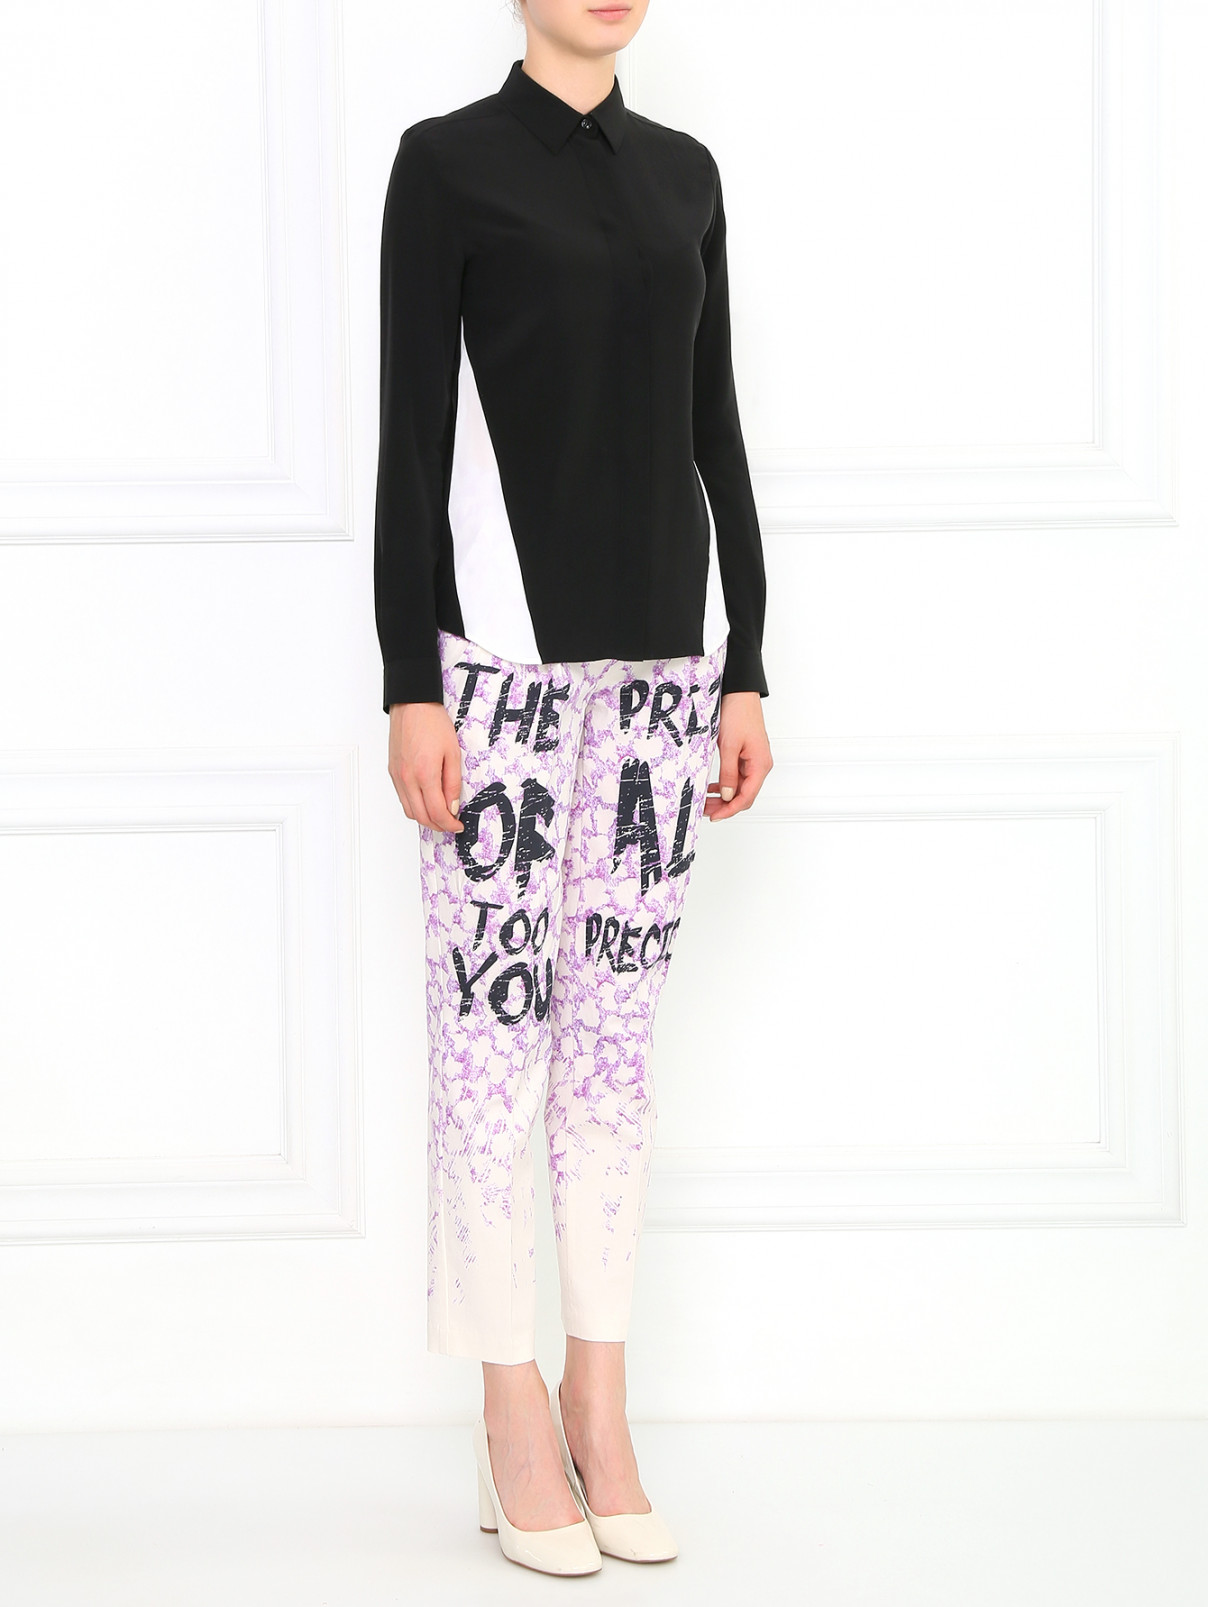 Блуза из шелка с контрастными вставками Barbara Bui  –  Модель Общий вид  – Цвет:  Черный